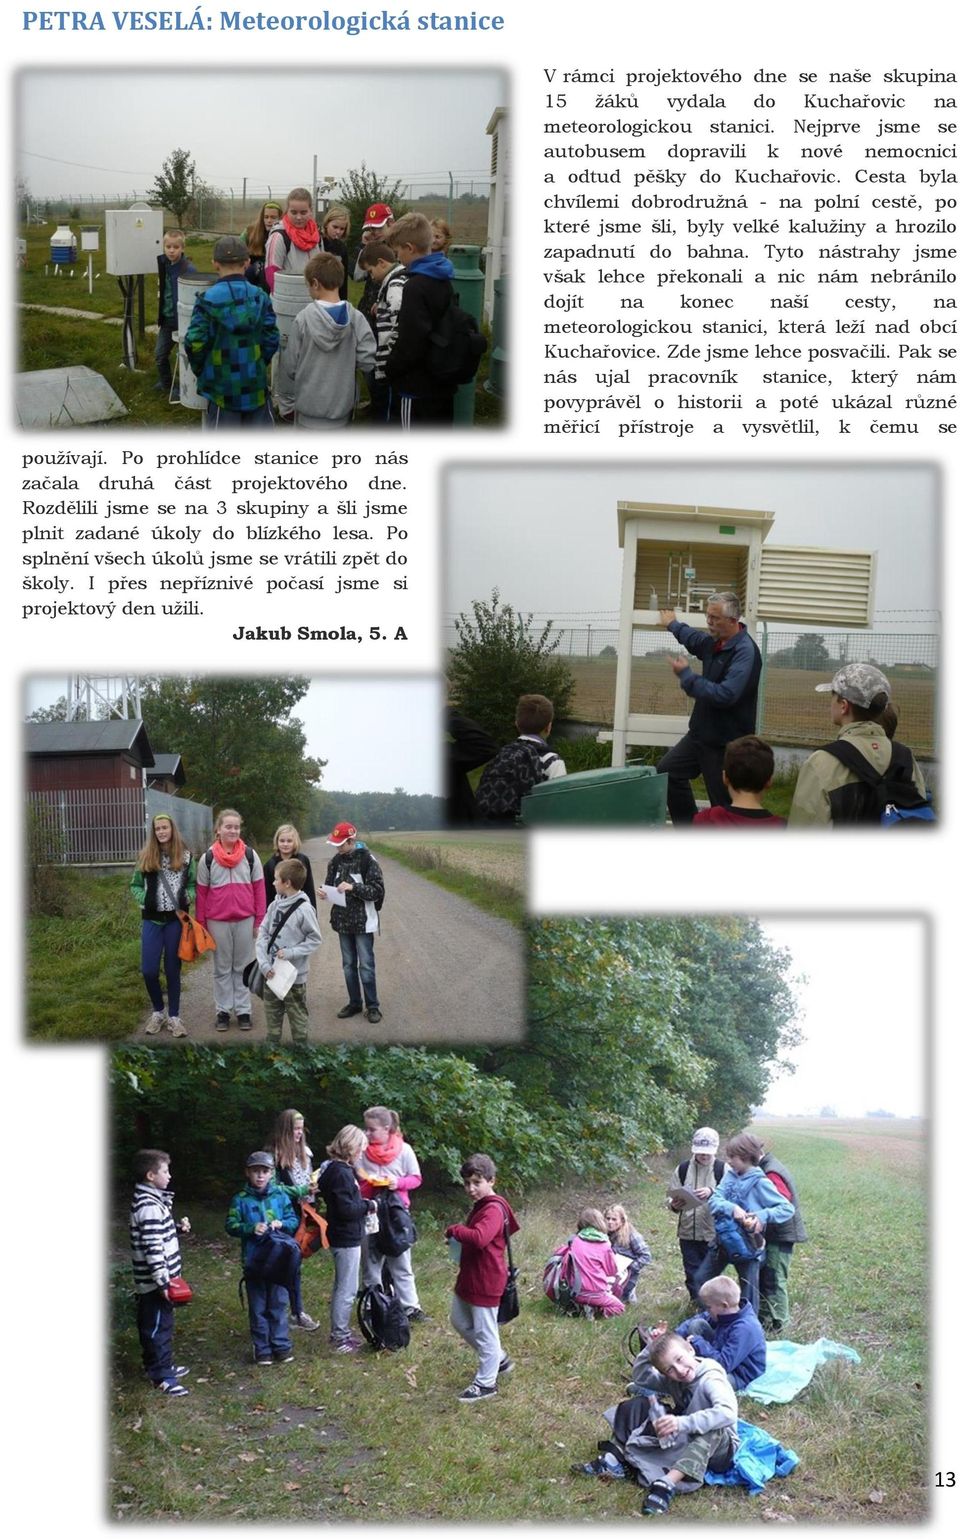 A V rámci projektového dne se naše skupina 15 žáků vydala do Kuchařovic na meteorologickou stanici. Nejprve jsme se autobusem dopravili k nové nemocnici a odtud pěšky do Kuchařovic.